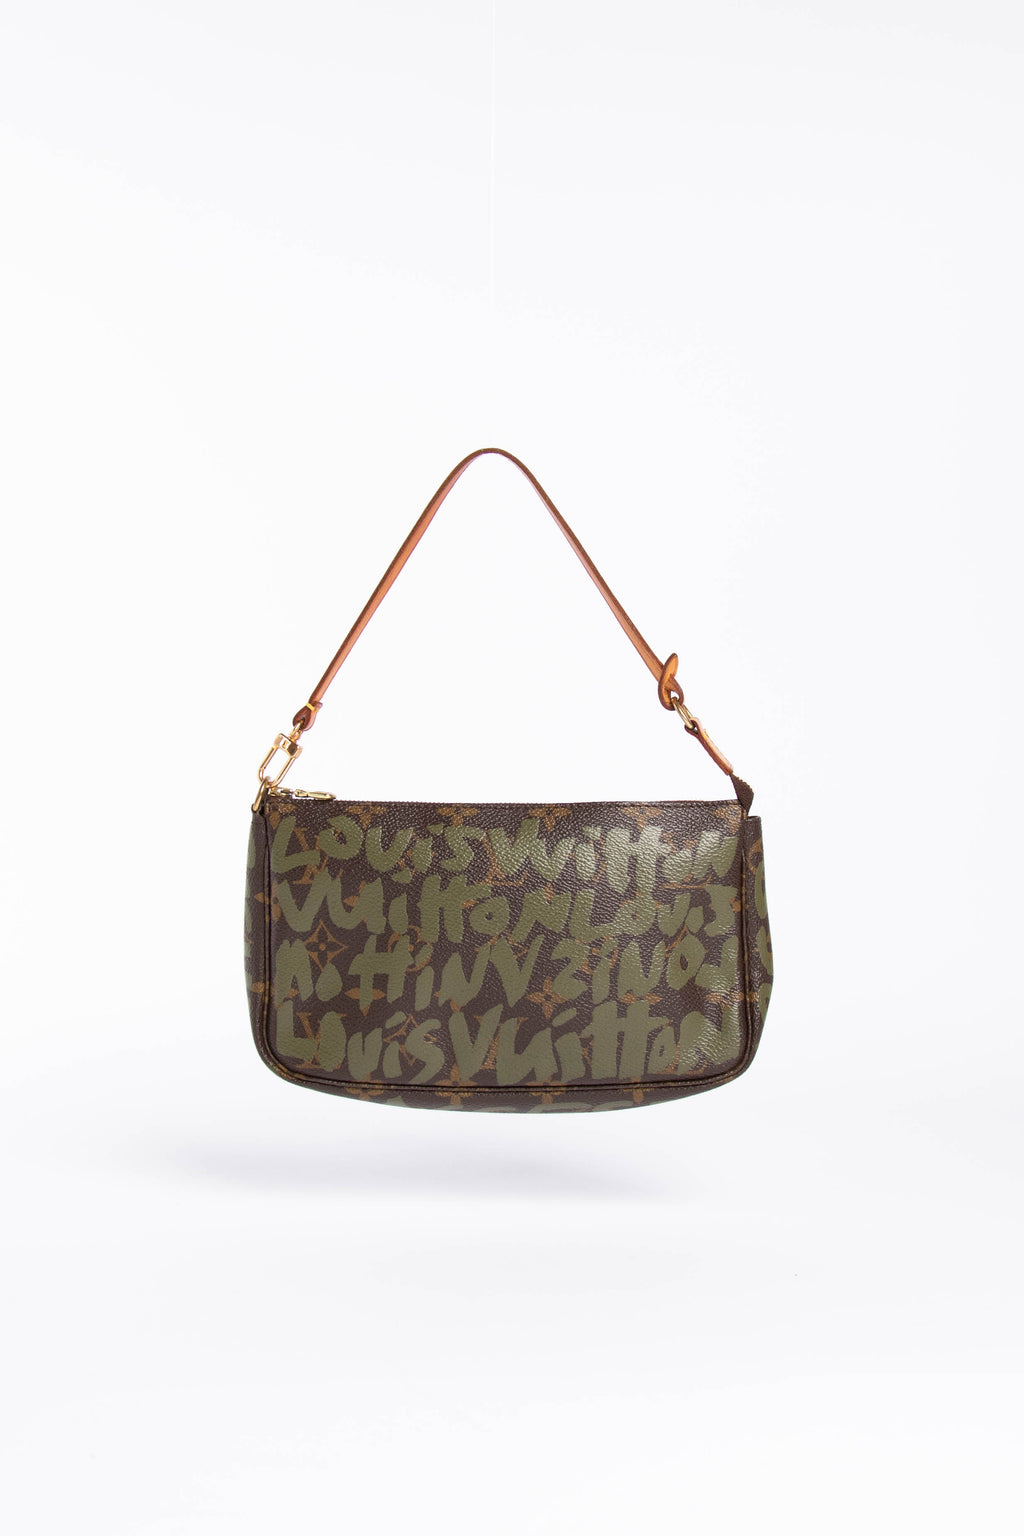 Louis Vuitton Stephen Sprouse Graffiti Monogram Pochette Accessoires Bag